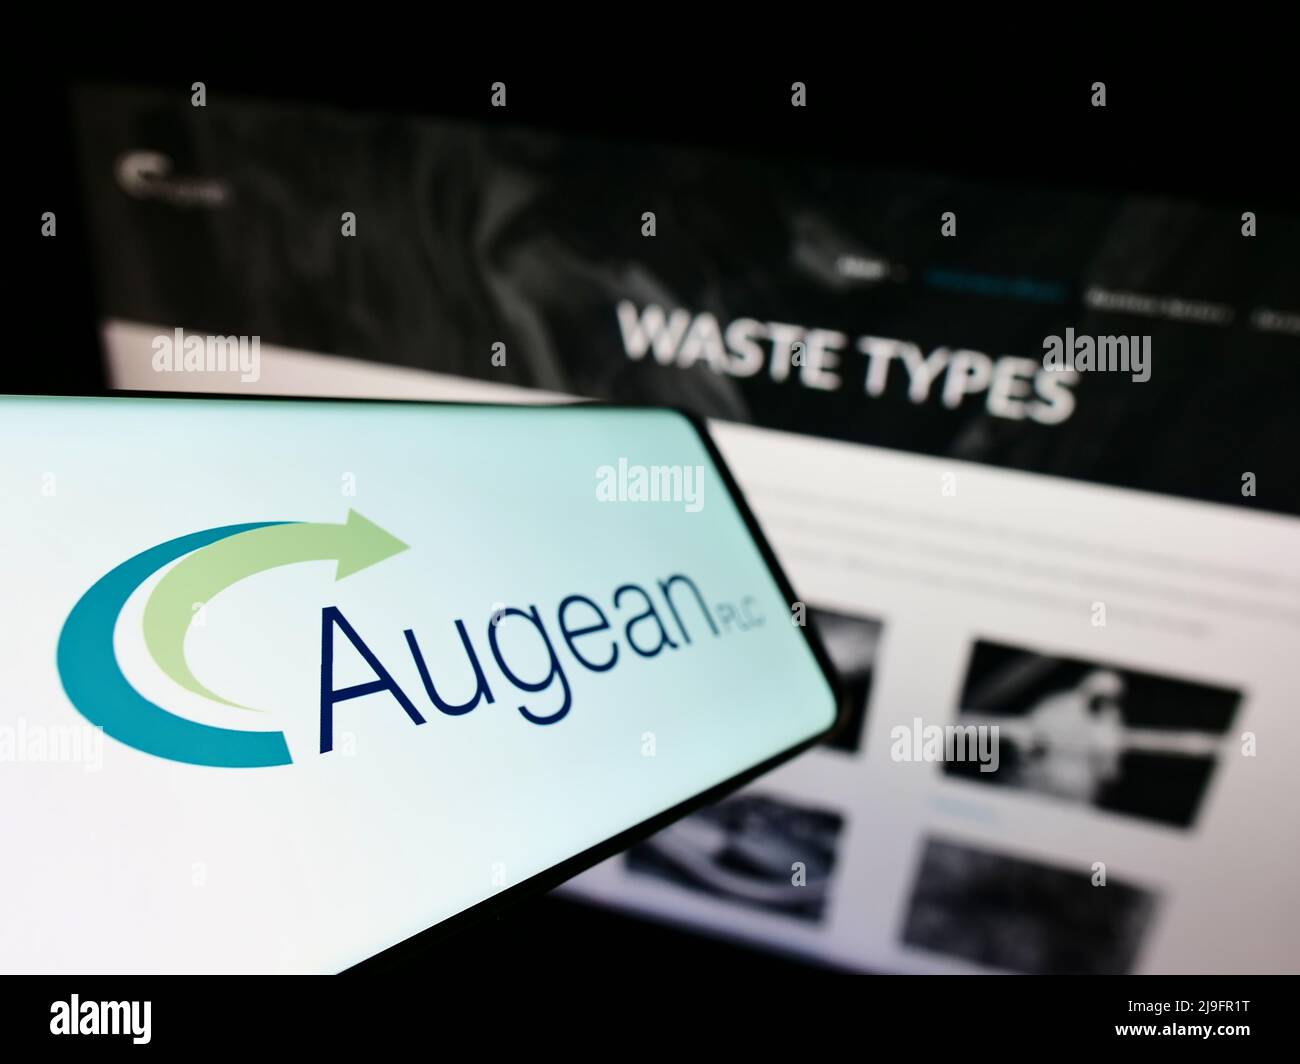 Teléfono móvil con el logotipo de la empresa británica de gestión de residuos Augean plc en la pantalla frente al sitio web empresarial. Enfoque a la izquierda de la pantalla del teléfono. Foto de stock